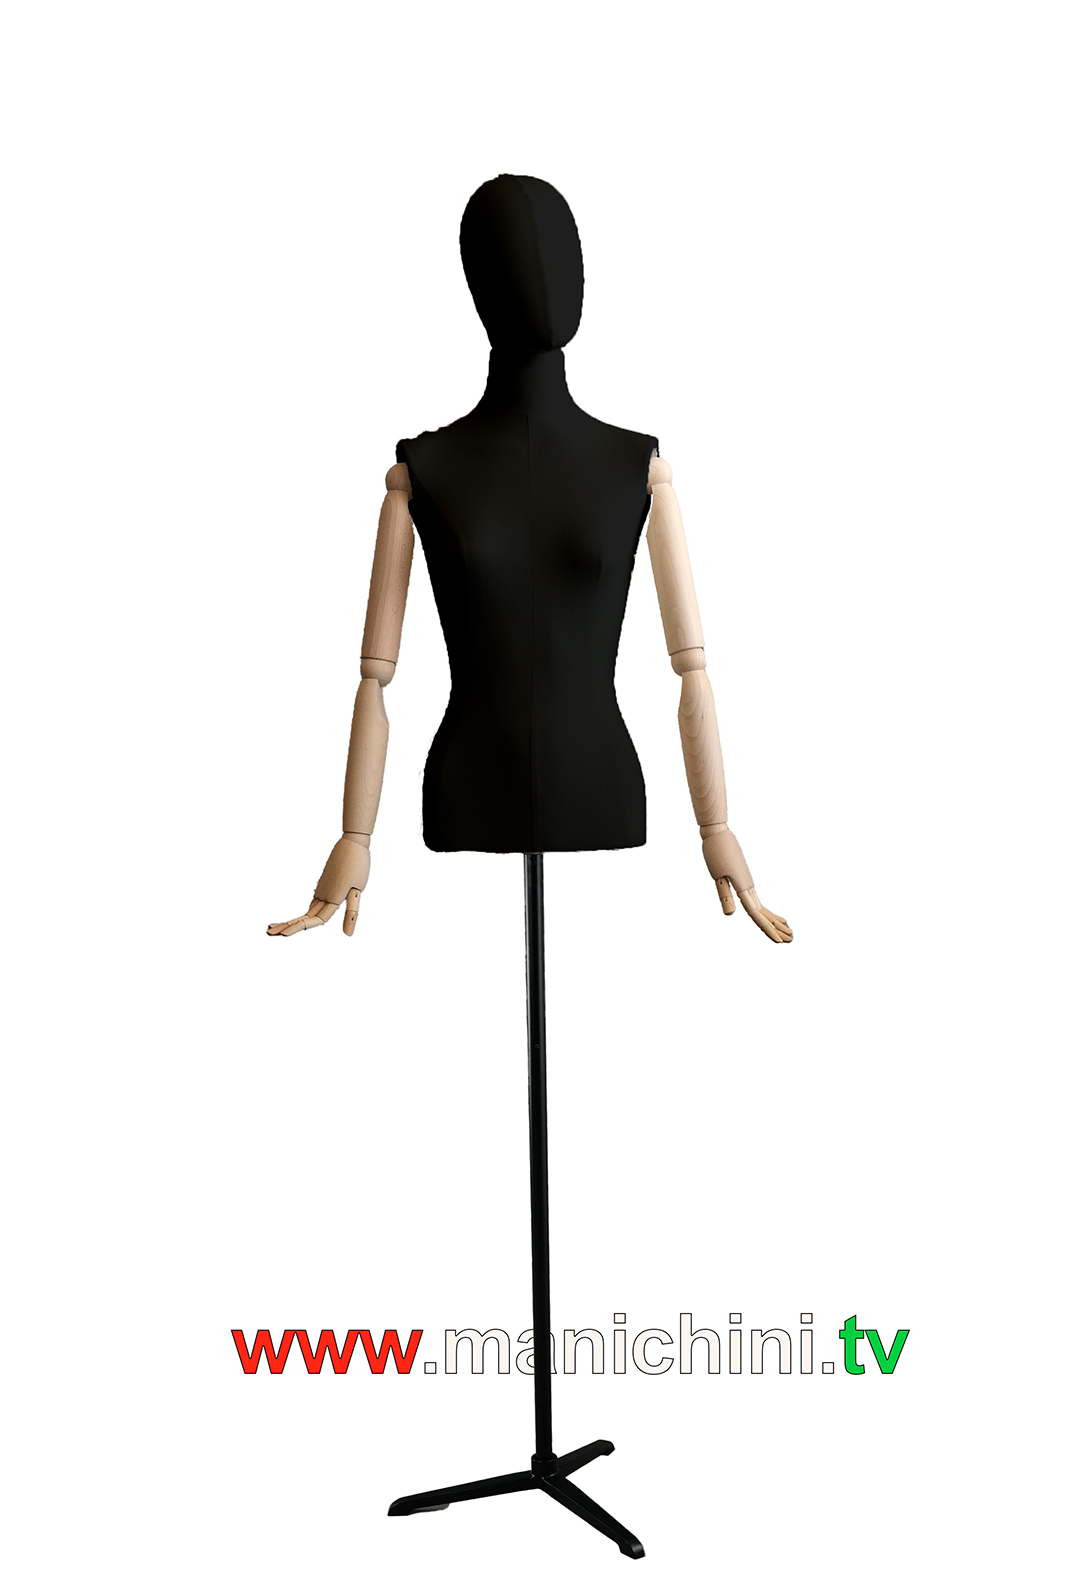 Baršunasto tapecirana poprsja poprsje žena krojena crne drvene ruke s glavom